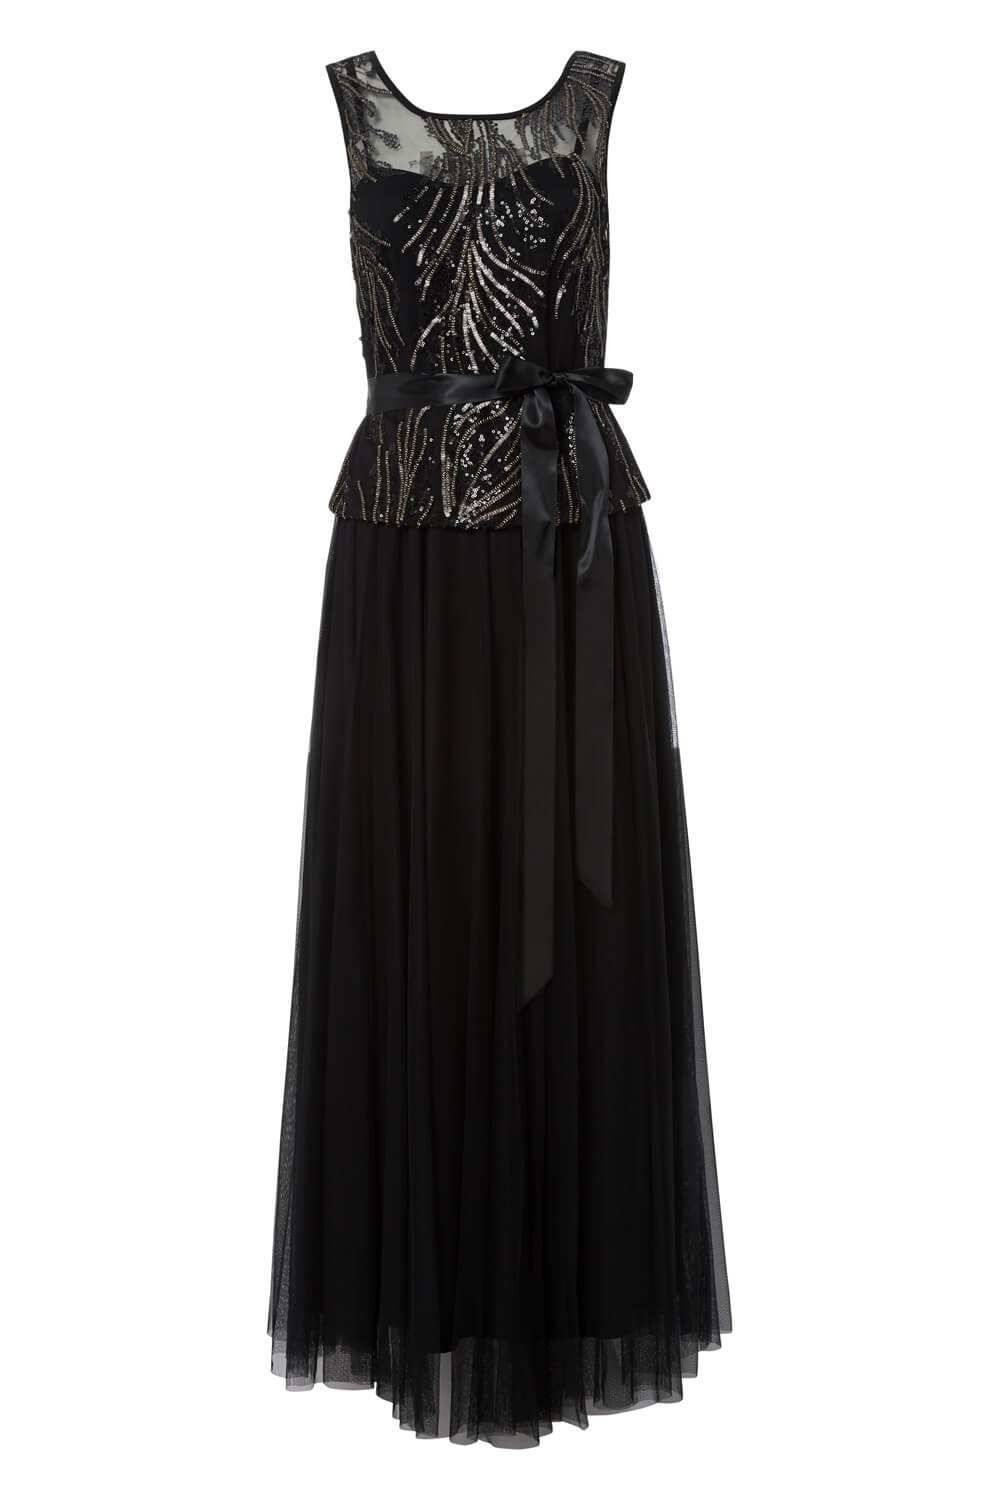 Sequin Tulle Maxi Dress in Black - Roman Originals UK